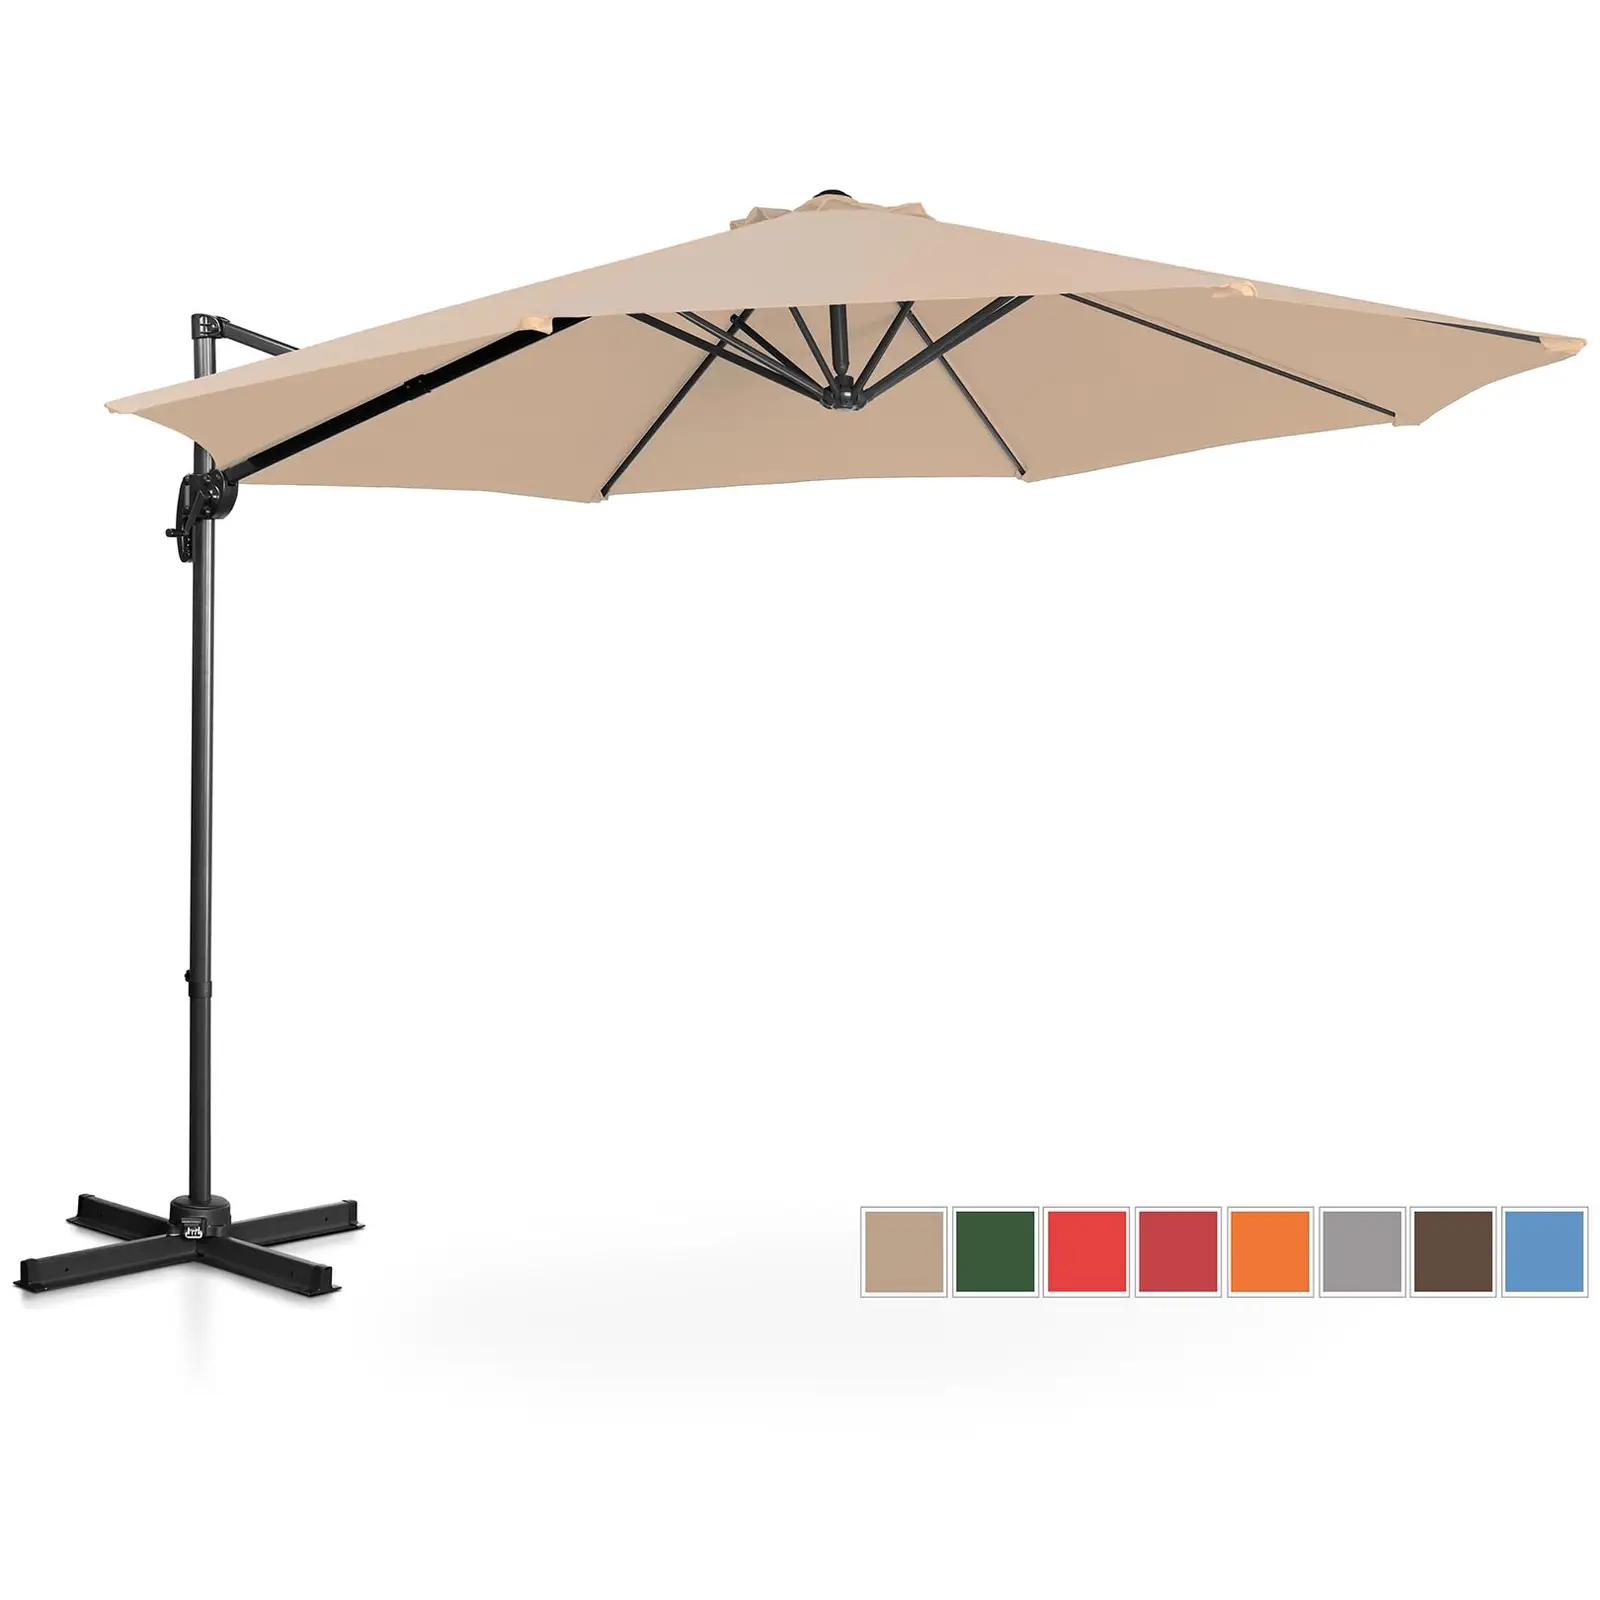 Aurinkovarjo - kermanvärinen - pyöreä - Ø 300 cm - kallistettava ja käännettävä